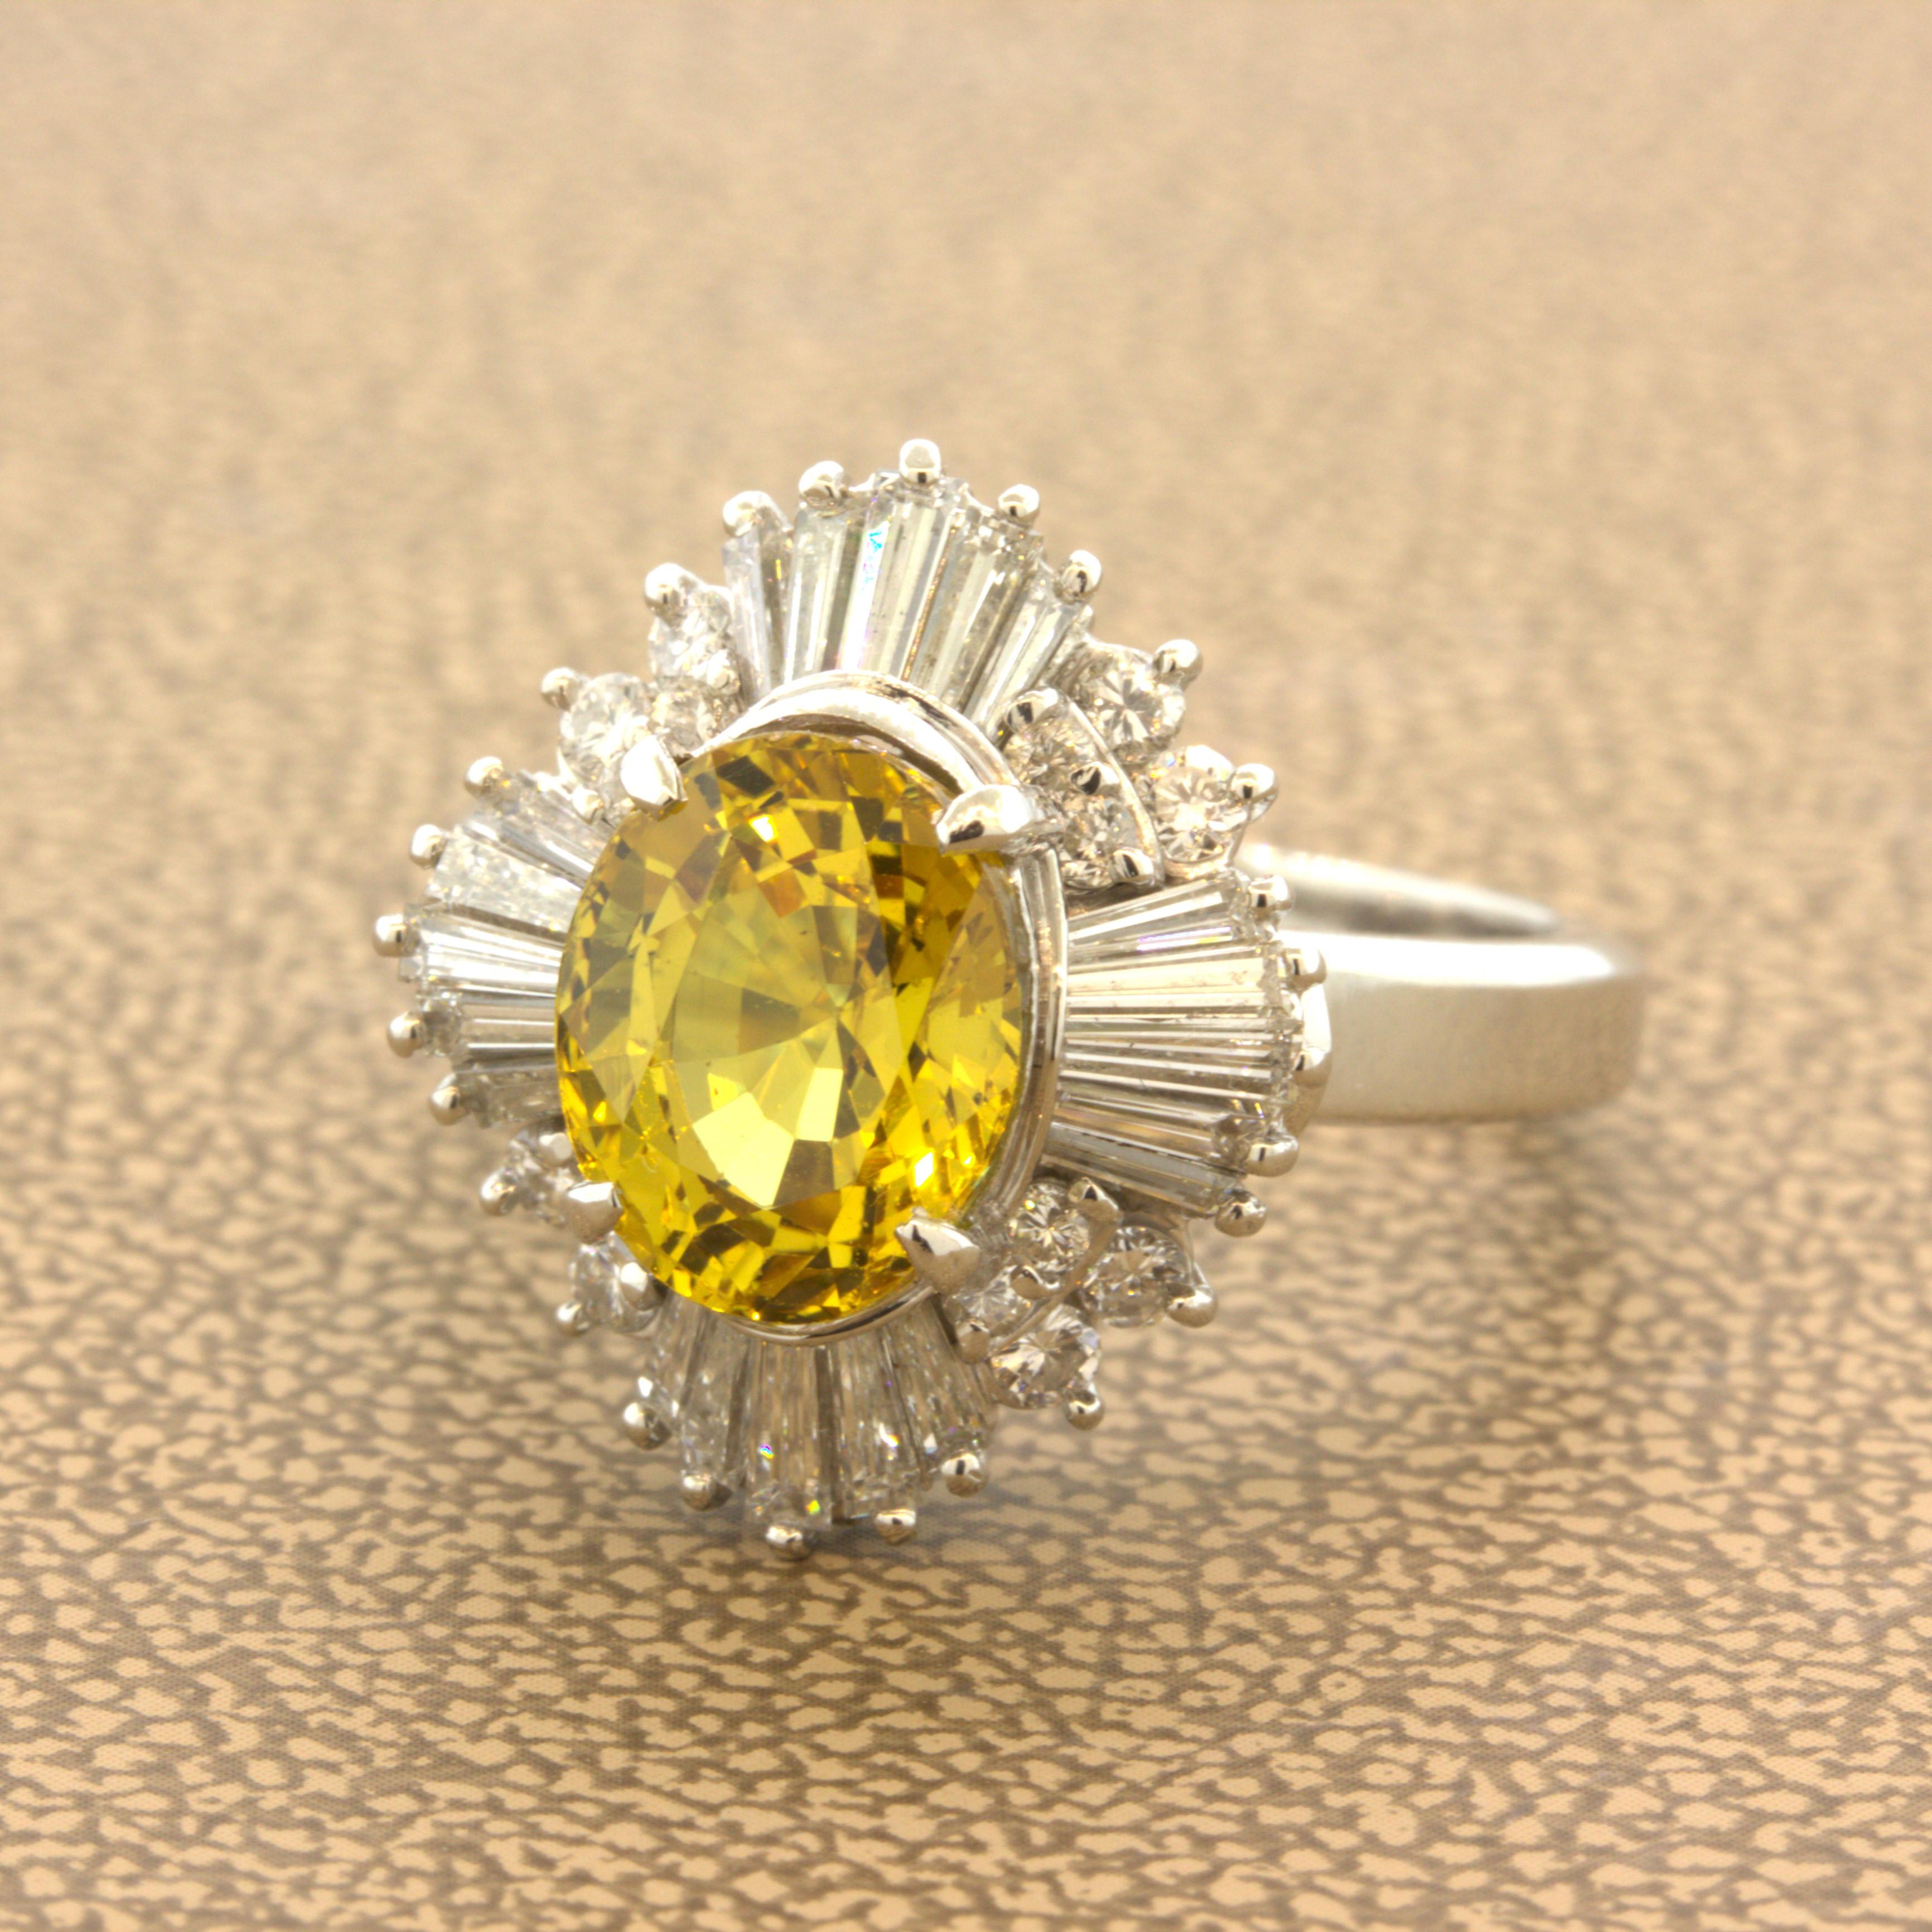 Platinring mit 3,77 Karat gelbem Sapphire-Diamant und Sonnenschliff

Ein schöner Edelsteinring mit einem gelben Saphir von 3,77 Karat. Es hat eine helle und satte, lebhafte gelbe Farbe, die im Licht leuchtet. Der Stein ist völlig sauber, so dass die